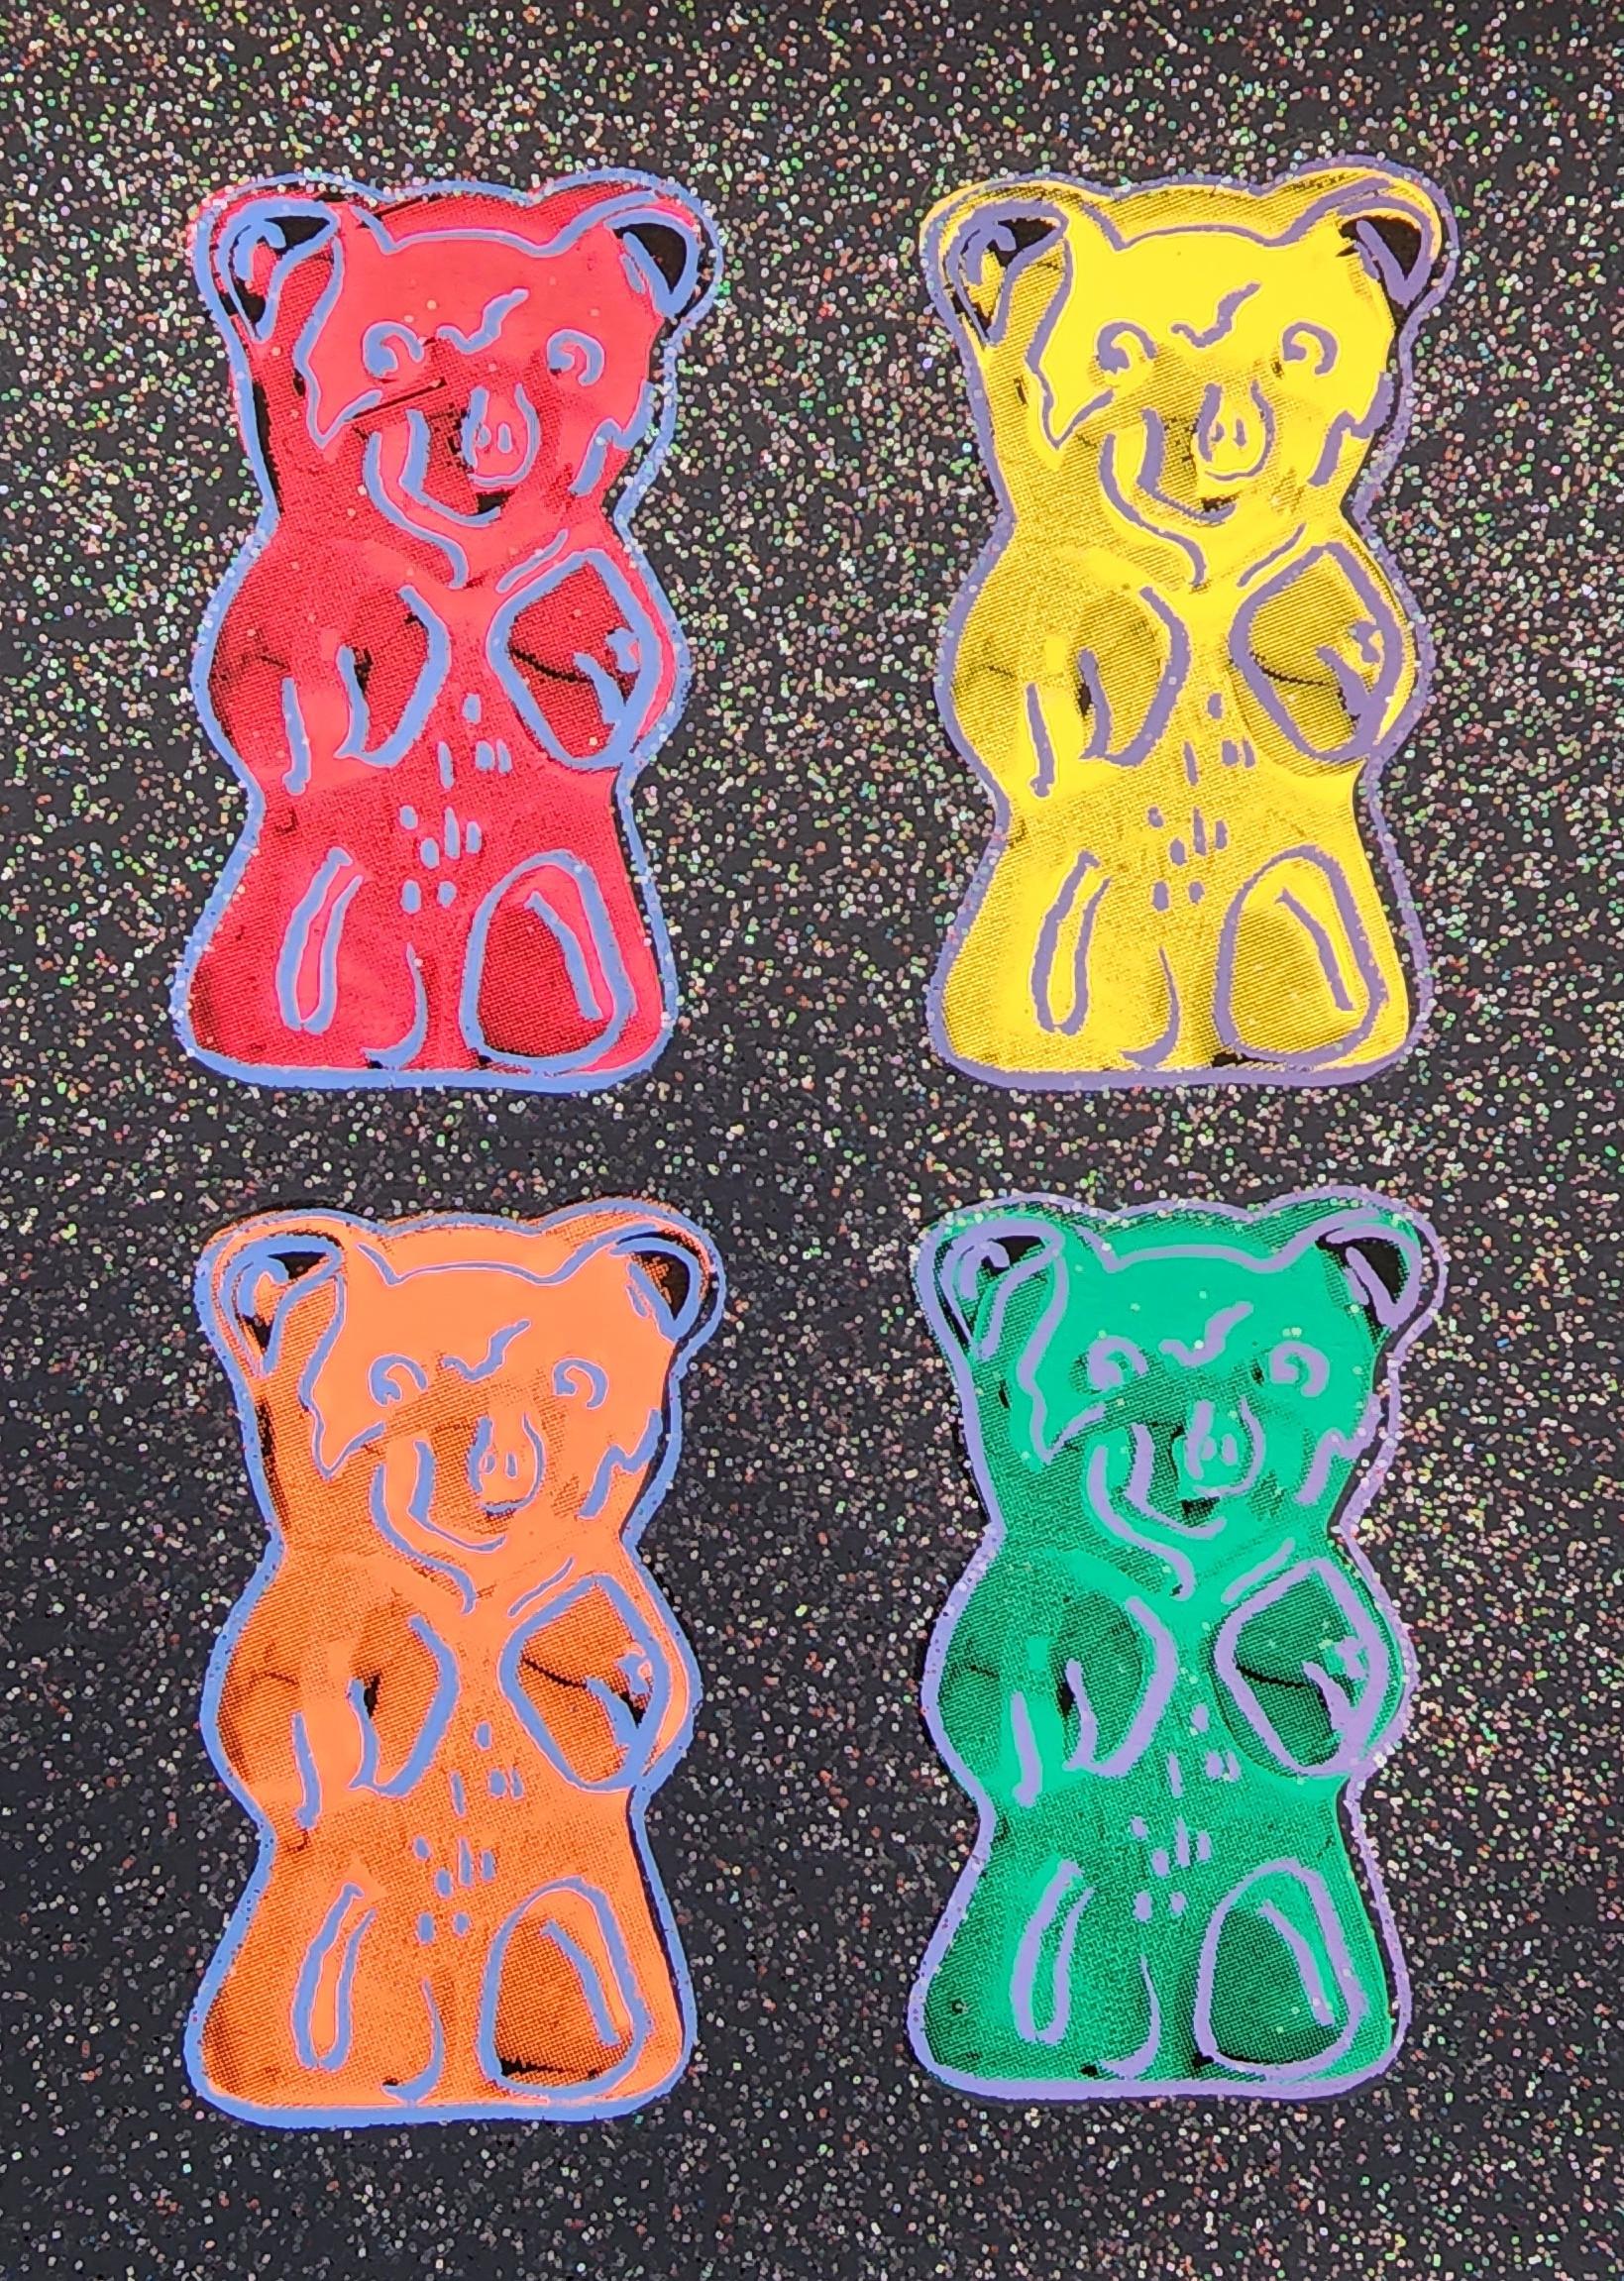 Gummi Bears #2 + Glitter, Small - BLACK (Pop Art, Warhol) (~50% OFF LIST PRICE) - Print de Jurgen Kuhl 